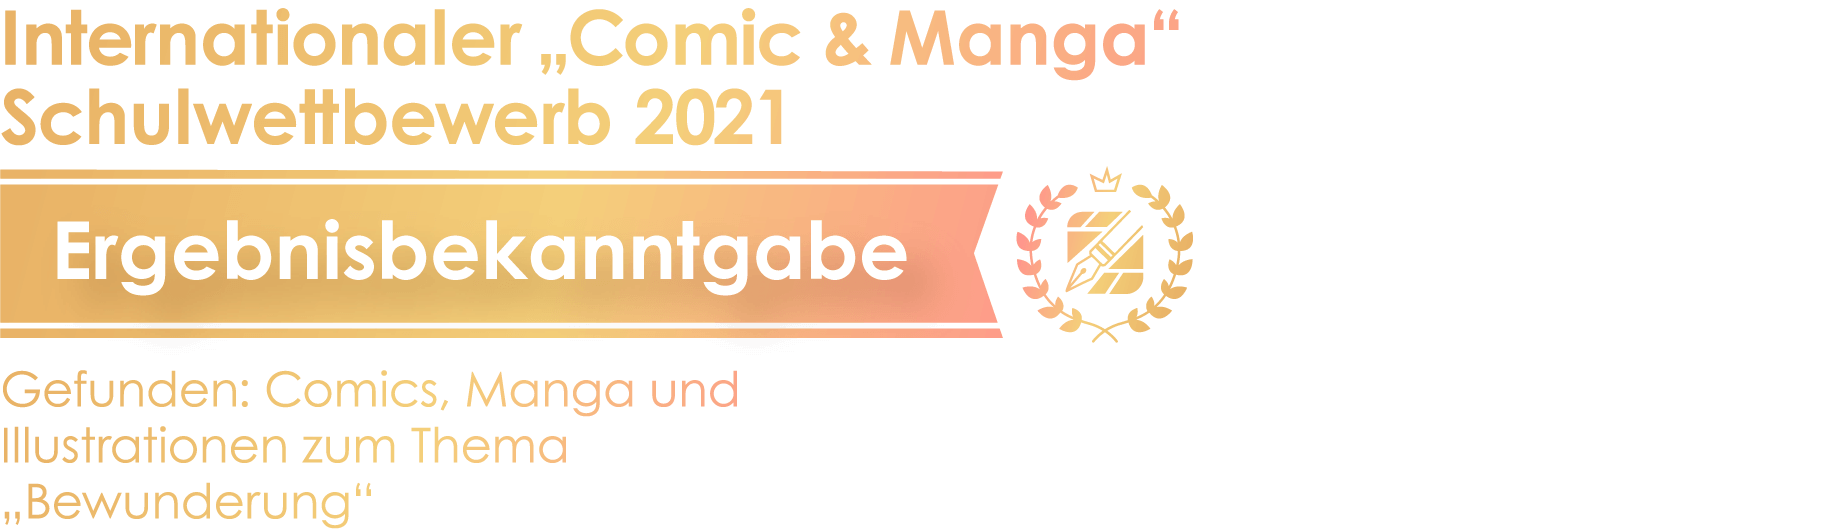 Ergebnisse des internationalen „Comic & Manga“ Schulwettbewerbs 2021 Thema: Bewunderung